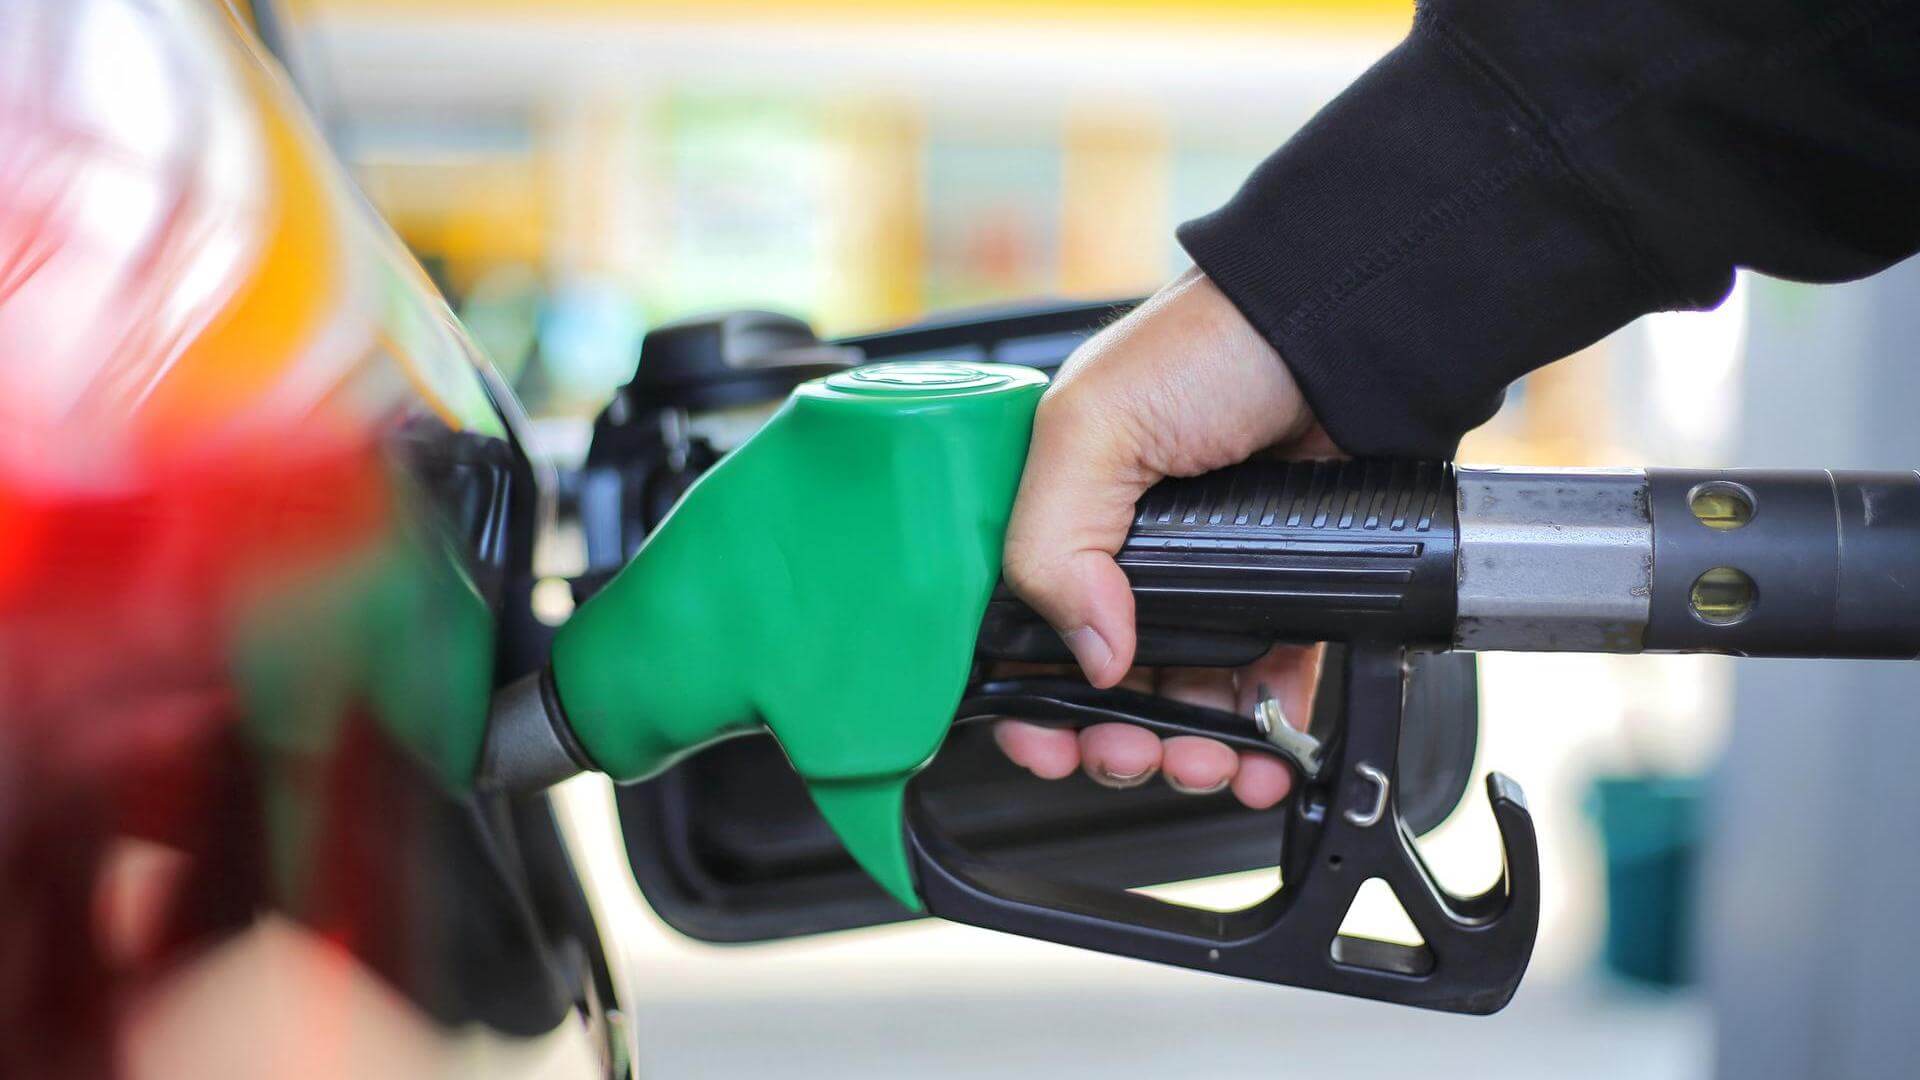 Цены на АЗС пошли в разгон, бензин подорожал кратно выше инфляции россия